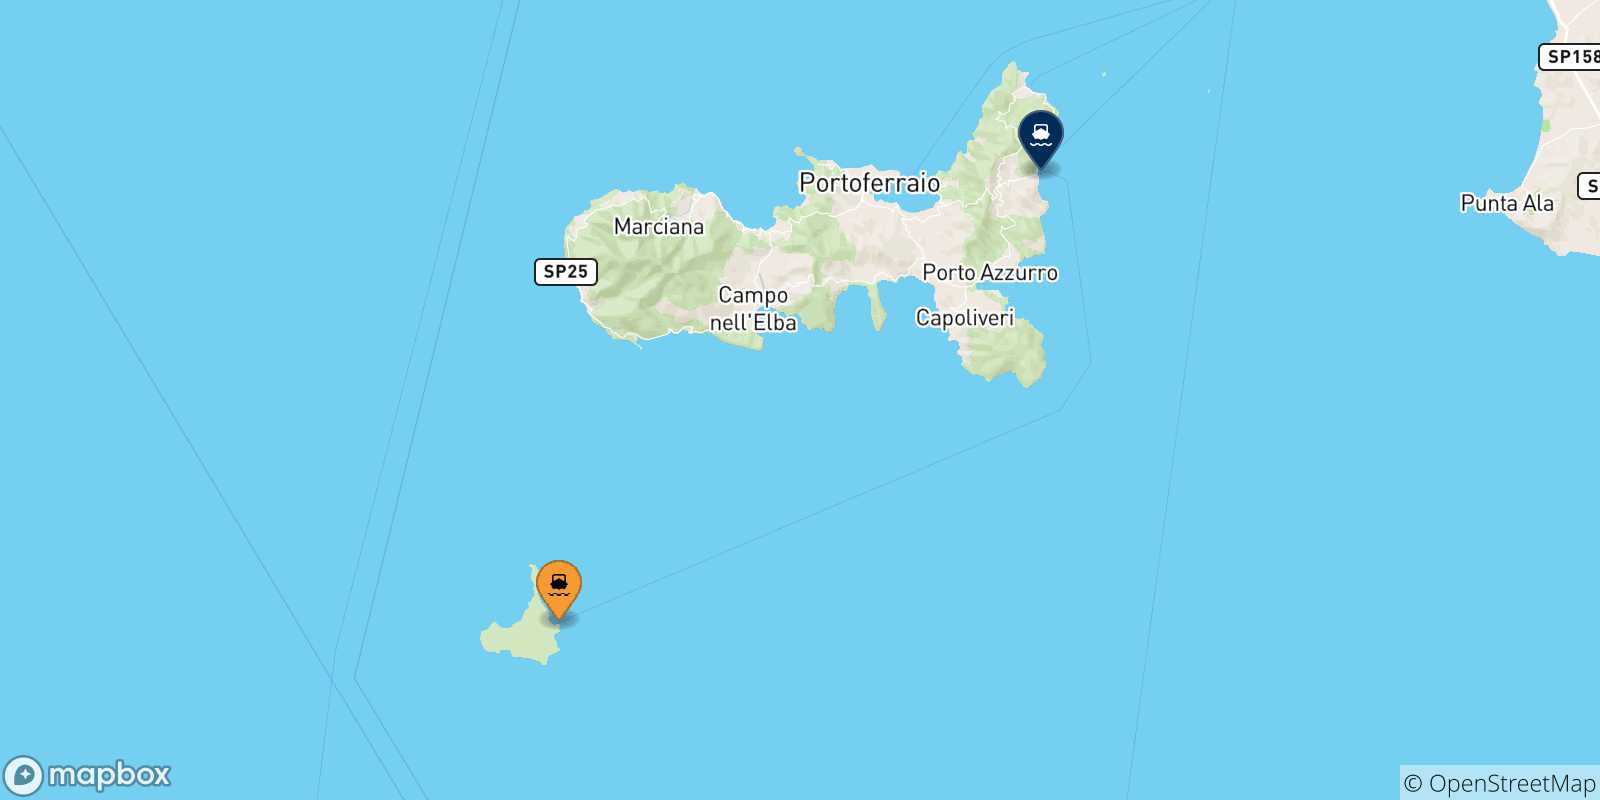 Mappa delle possibili rotte tra l'Isola Di Pianosa e l'Isola D'elba